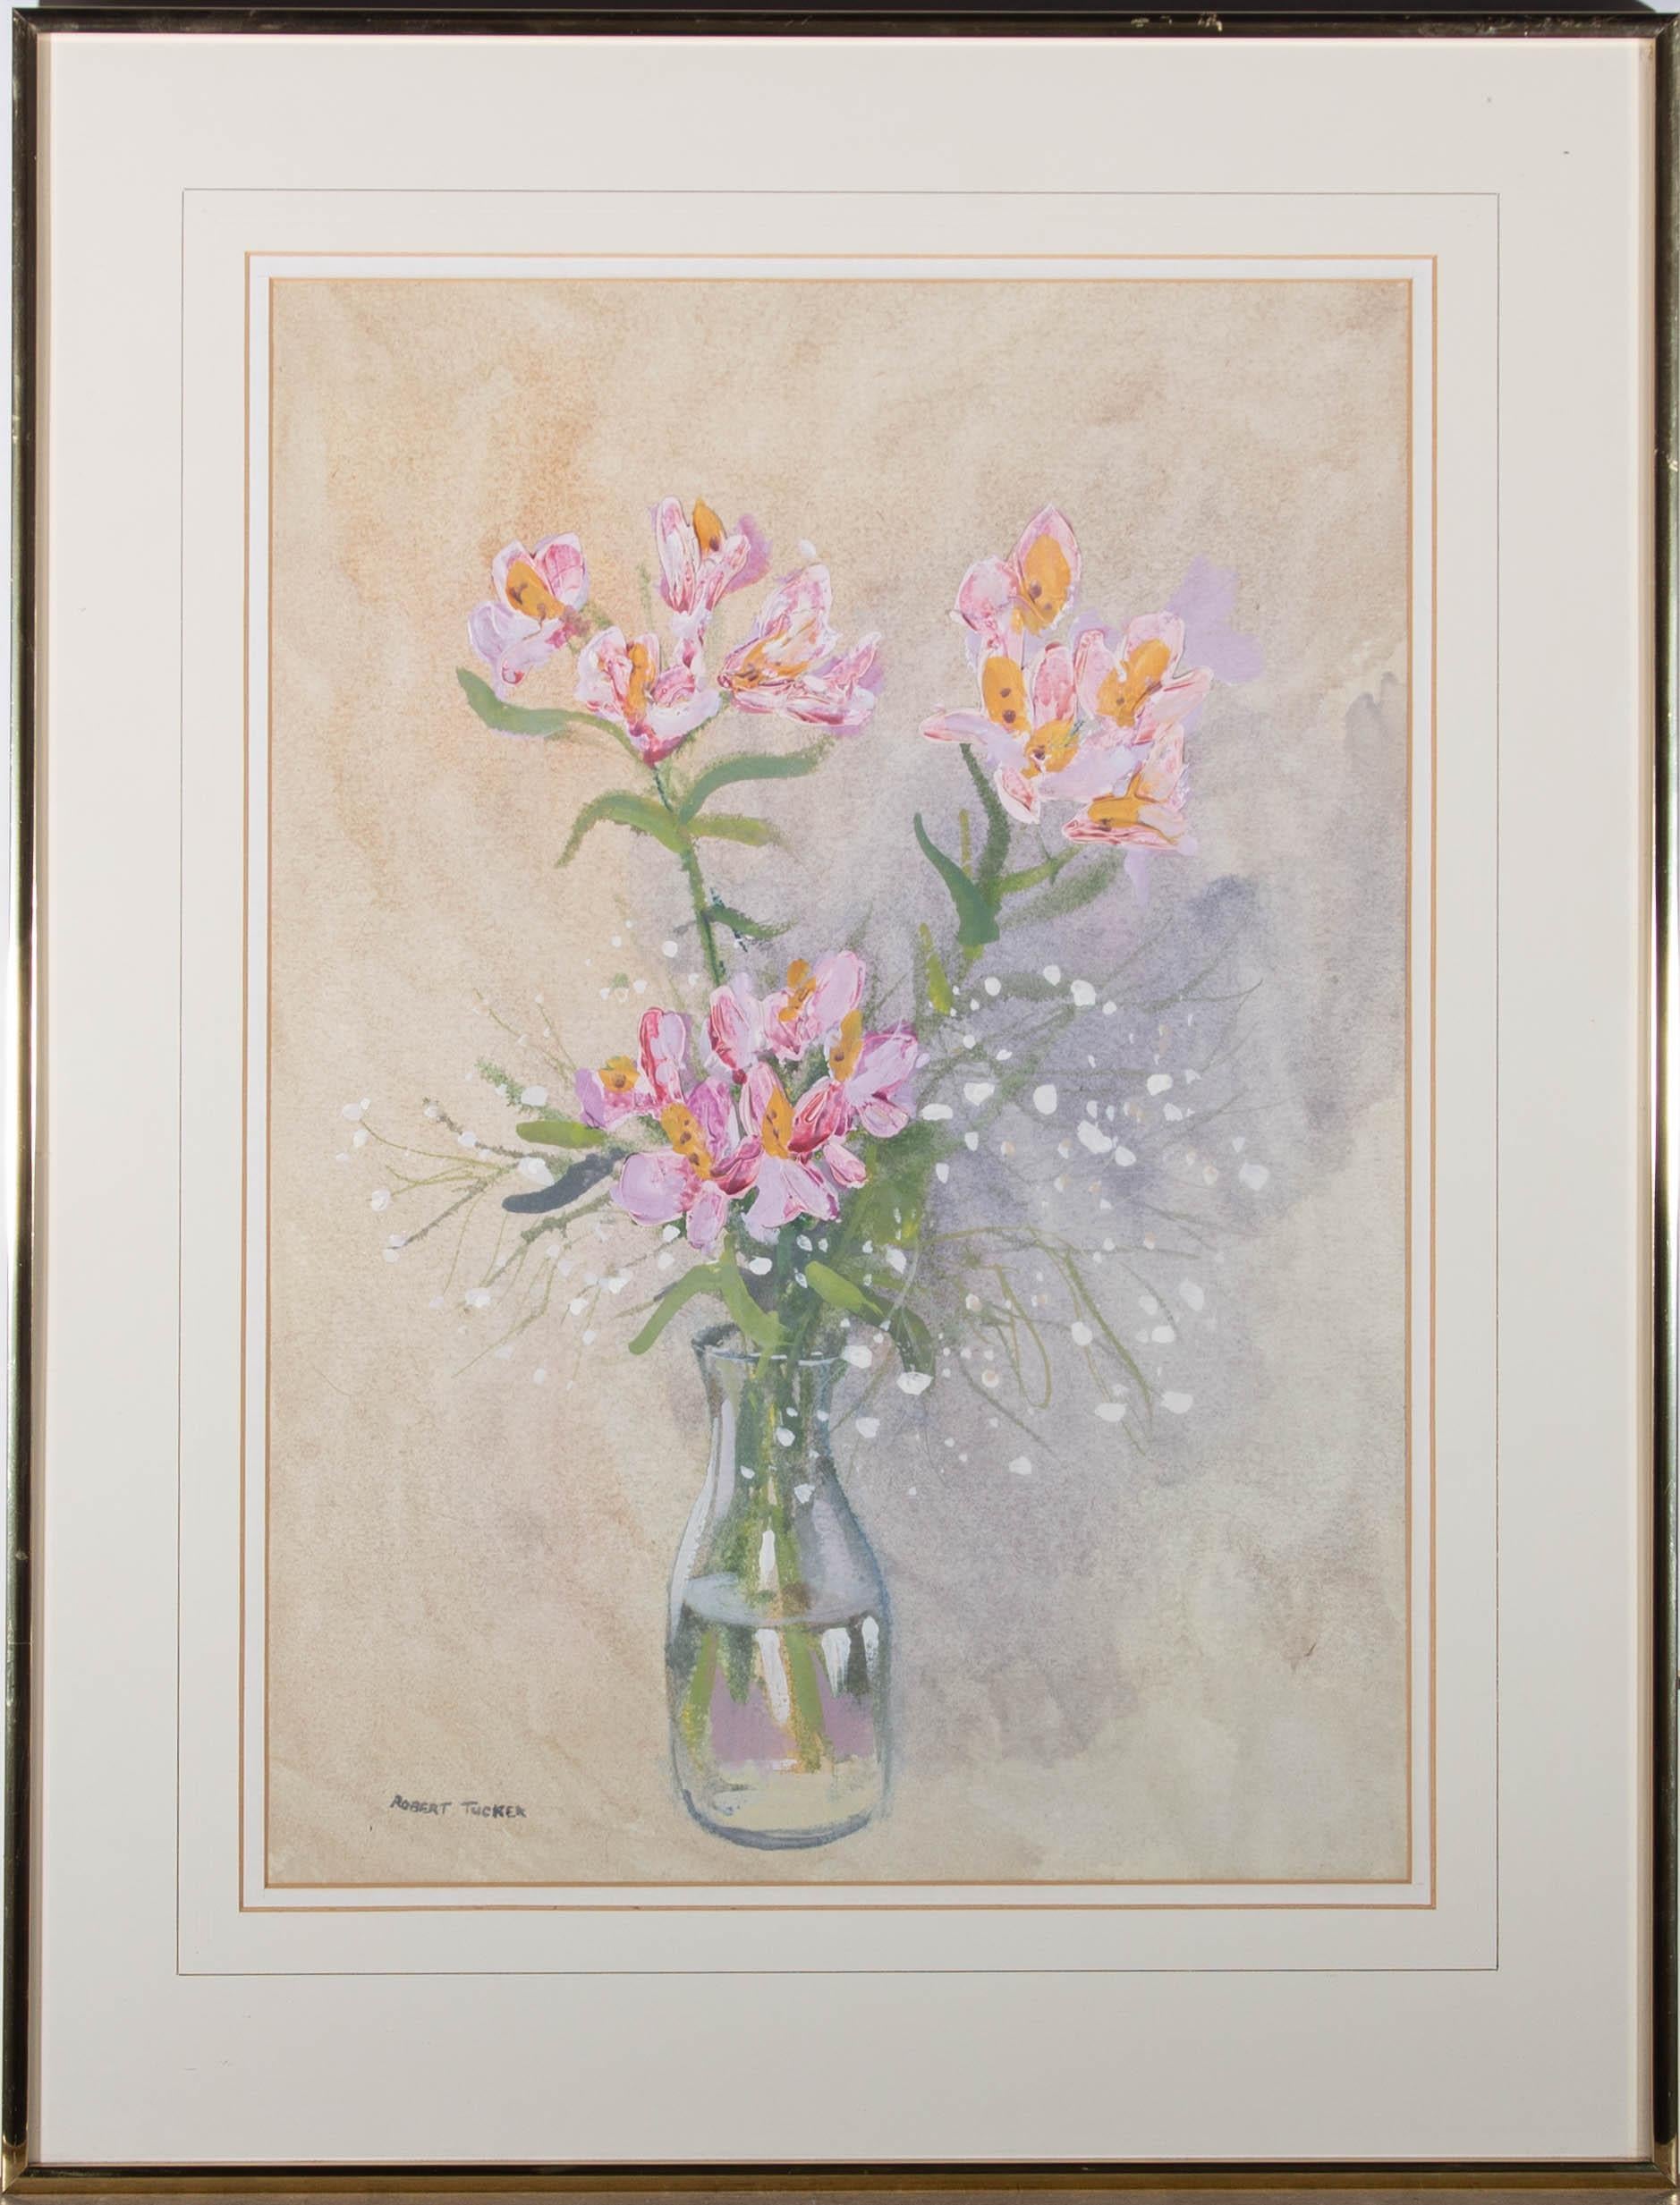 Eine zarte Studie von Freesien und weißen Blüten in einer Glasvase. Die Künstlerin hat Ölfarben mit einer Impasto-Technik auf einem Aquarellgrund verwendet, um strukturierte Blütenblätter zu schaffen. Signiert unten links. Präsentiert in einem